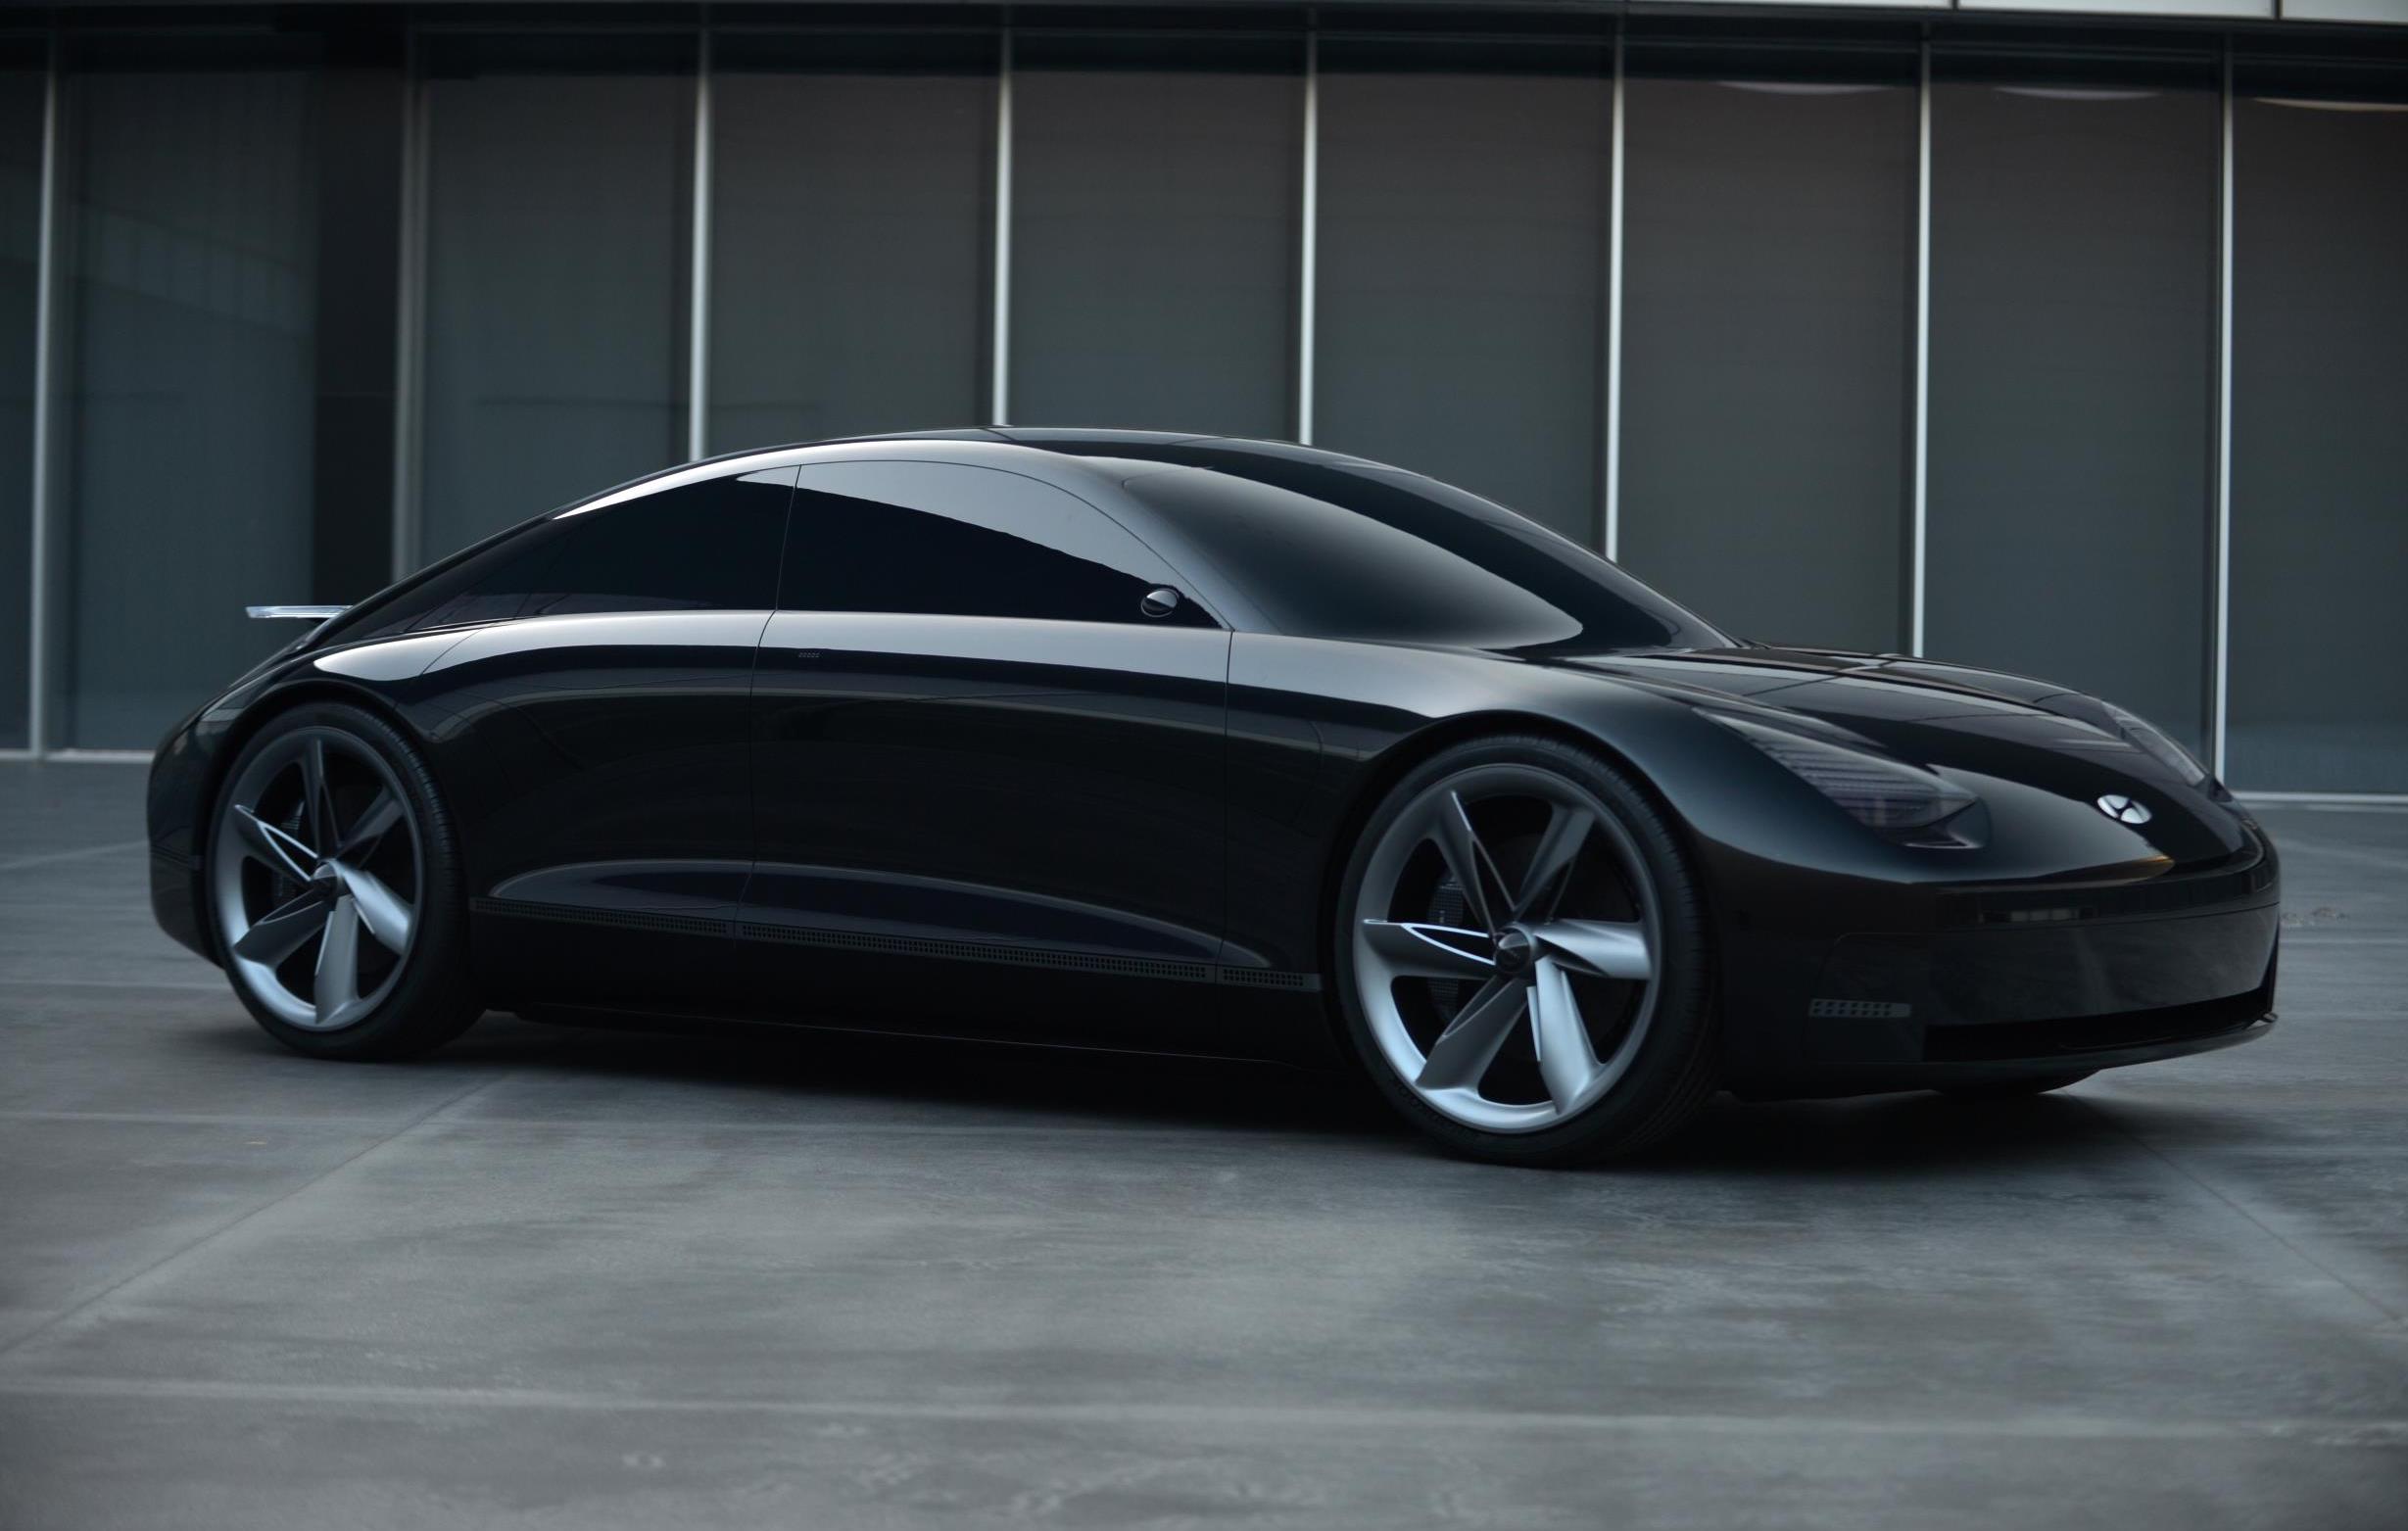 Futuristic Hyundai Prophecy EV concept unveiled